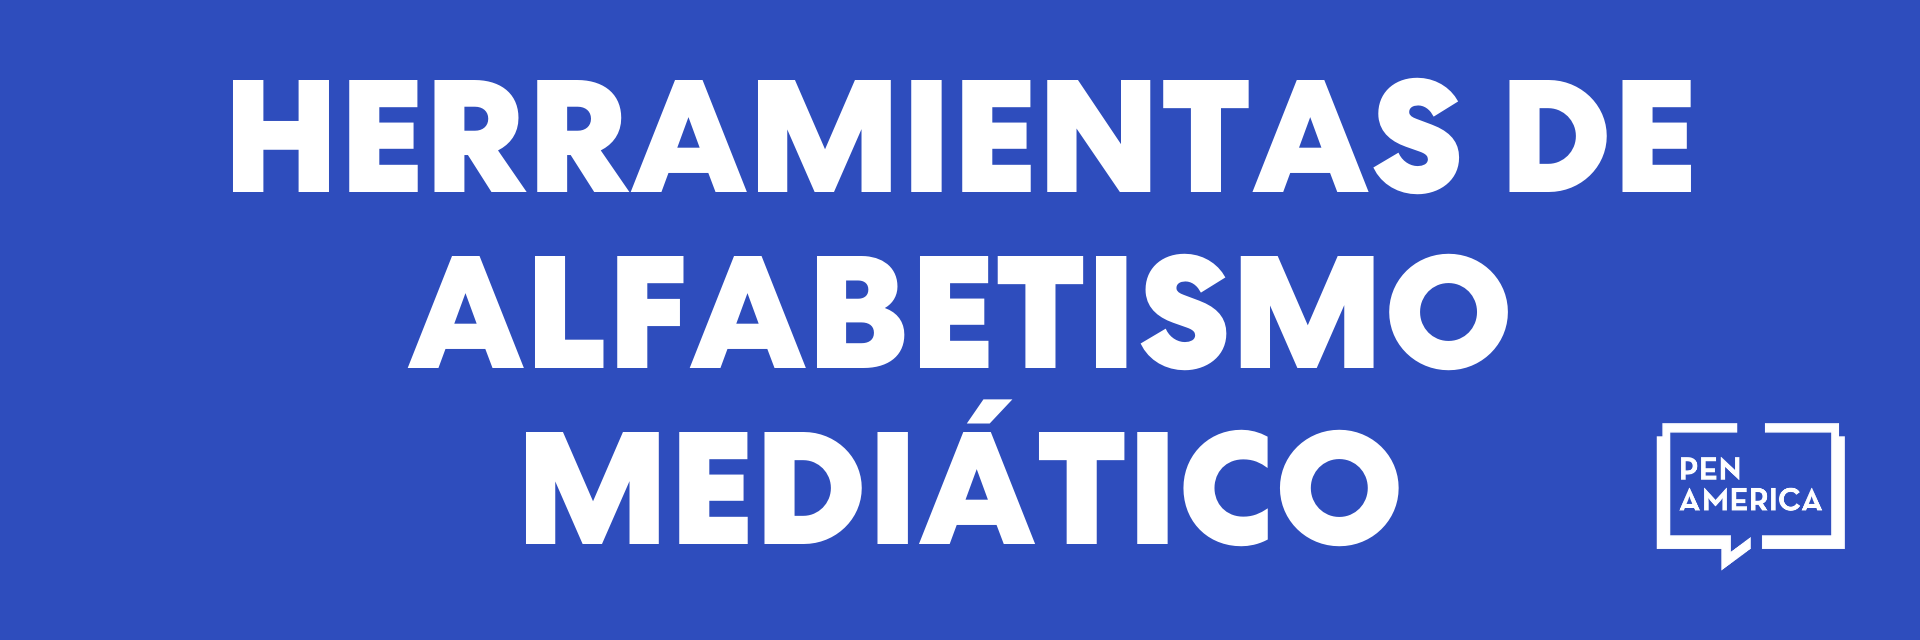 Bandera azul con las palabras "Herramientas de alfabetismo mediático" y el logotipo de PEN America